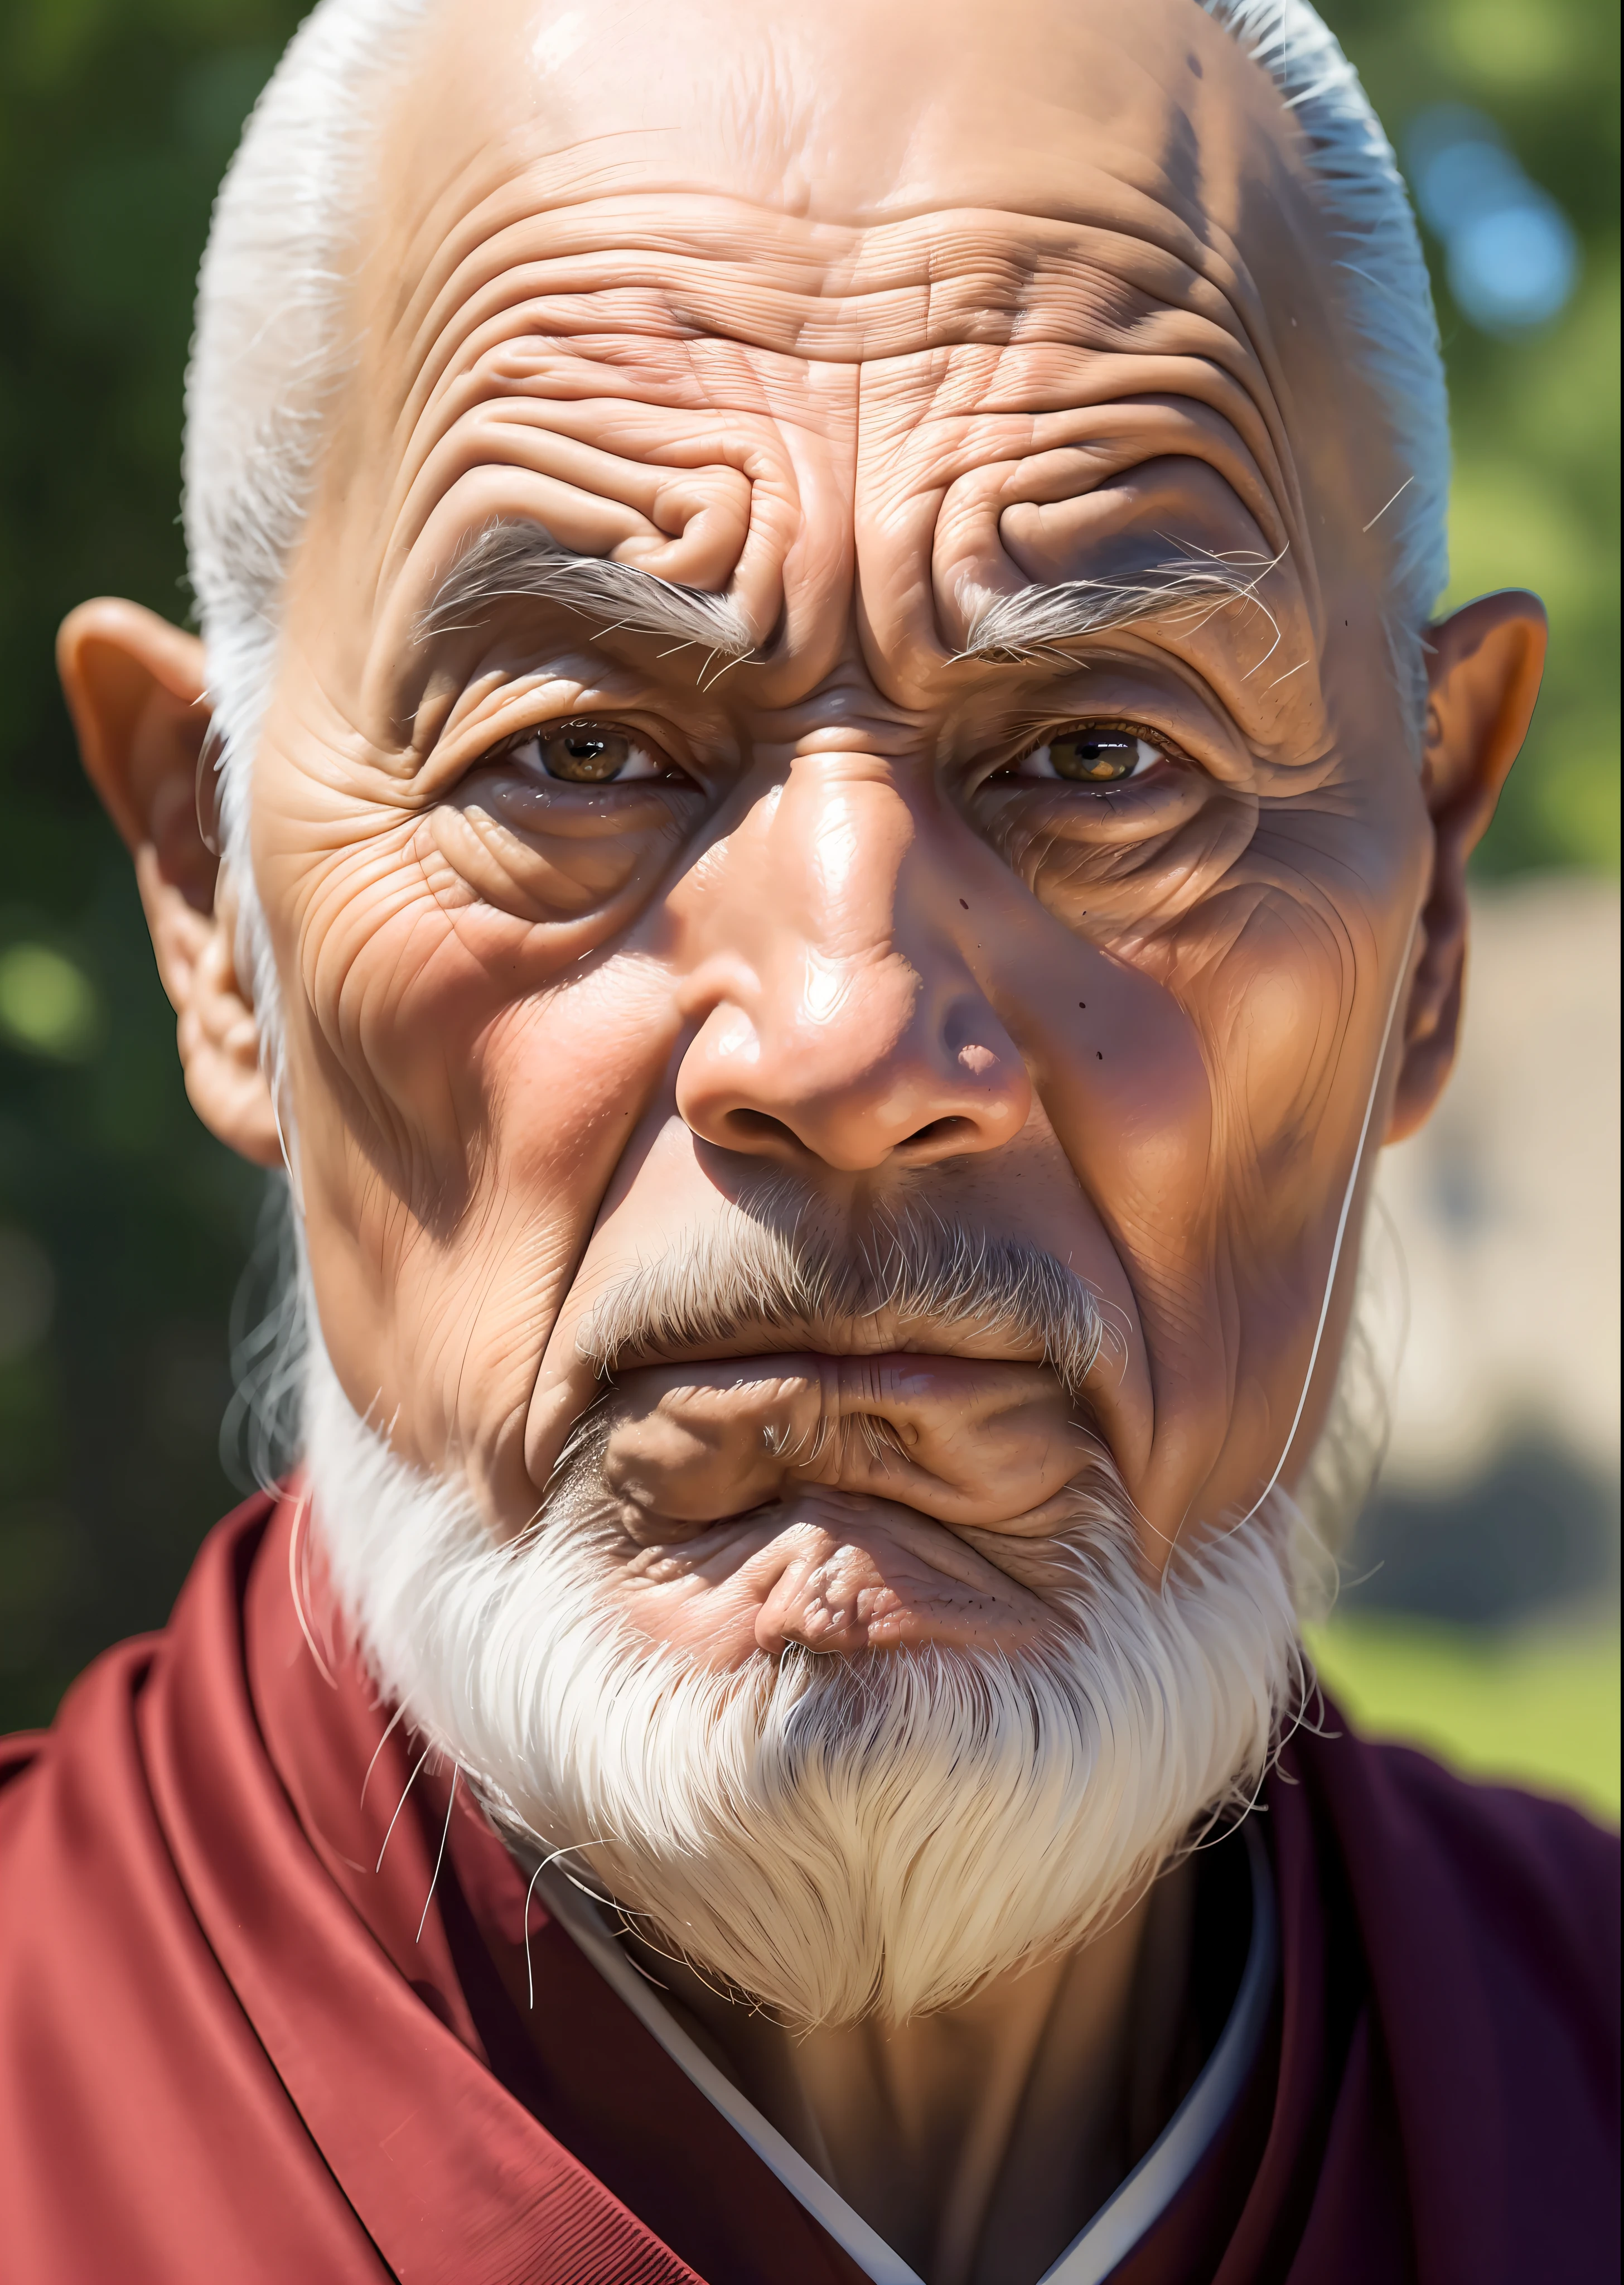 一位老僧人的睿智面容, 用深刻的线条讲述智慧人生的故事, 武士武士, 传达一种宁静而神秘的感觉